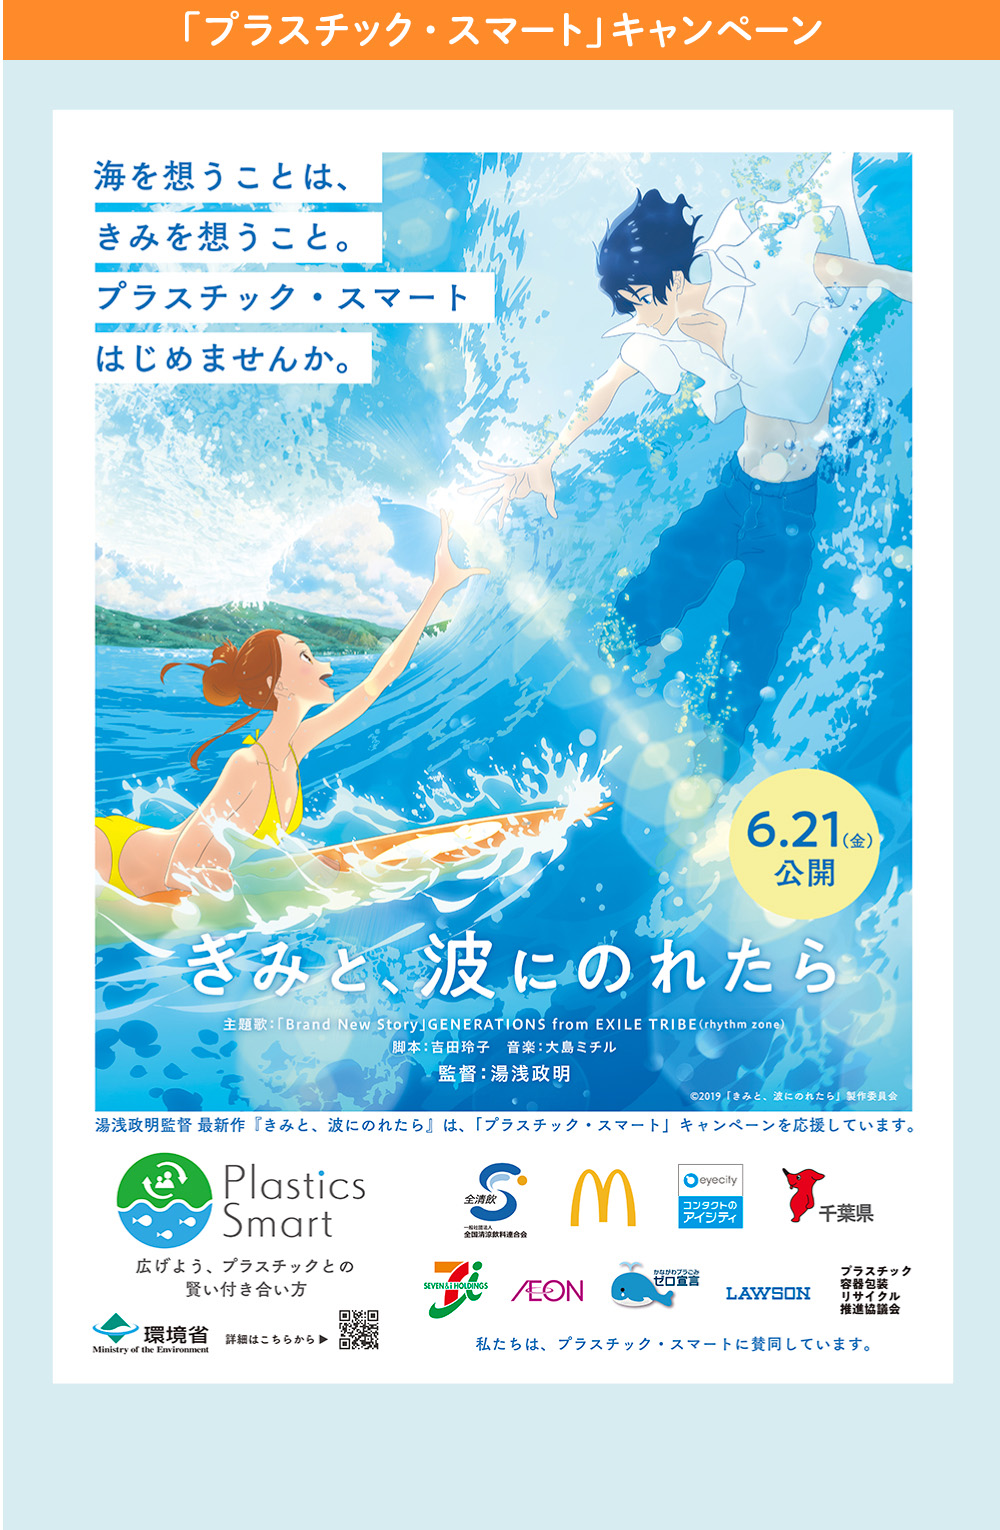 「プラスチックスマート」キャンペーン